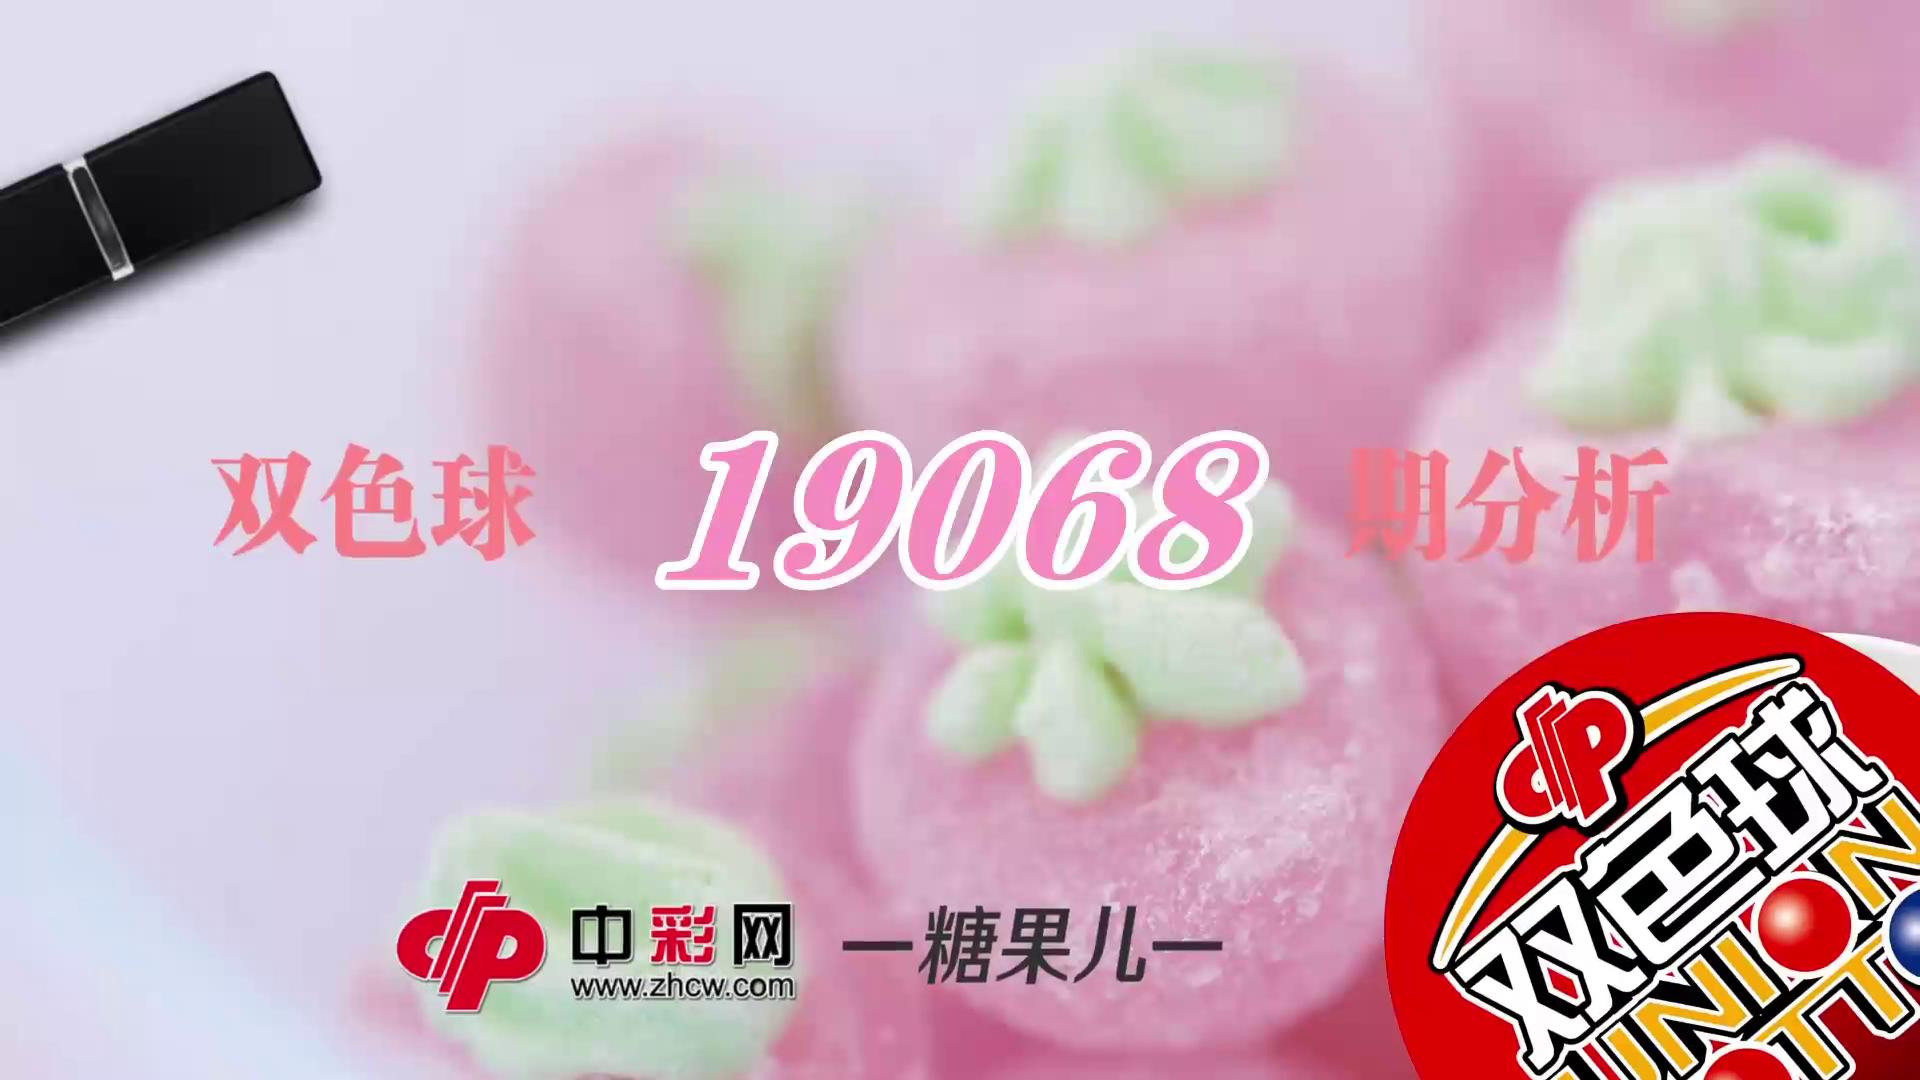 【中彩视频】糖果儿双色球第19068期